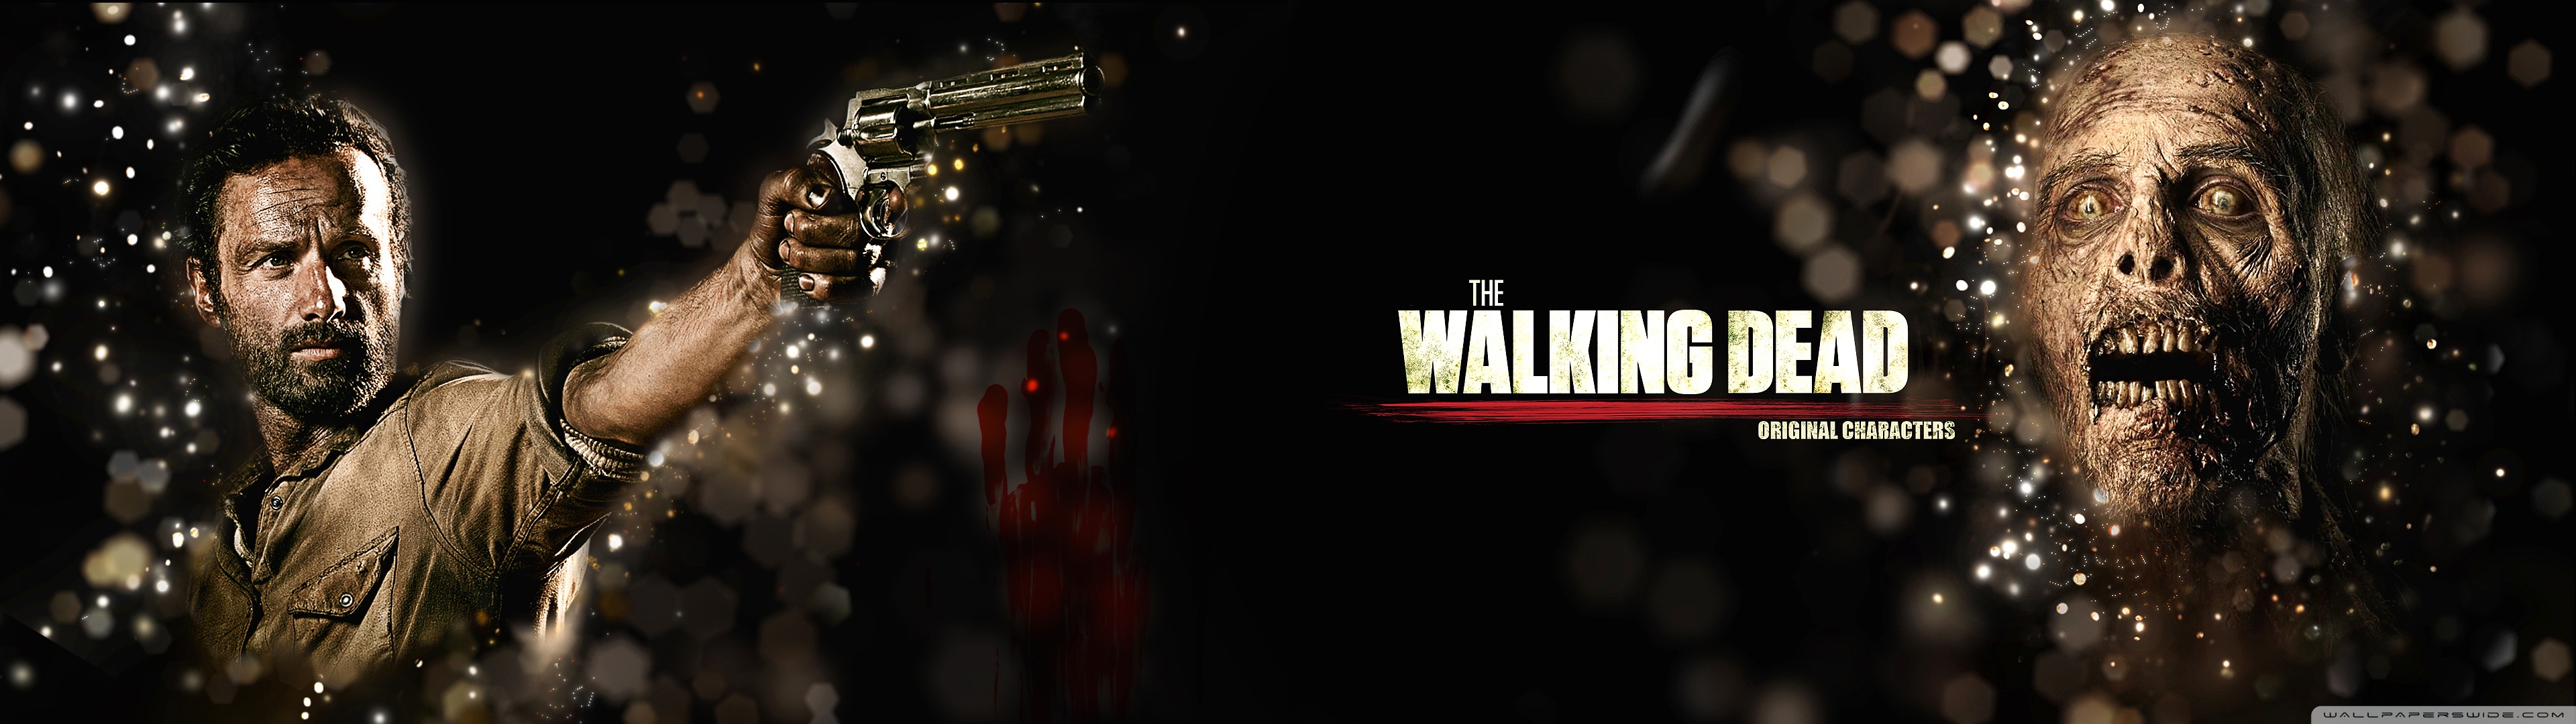 Walking Dead Dual Monitor - HD Wallpaper 